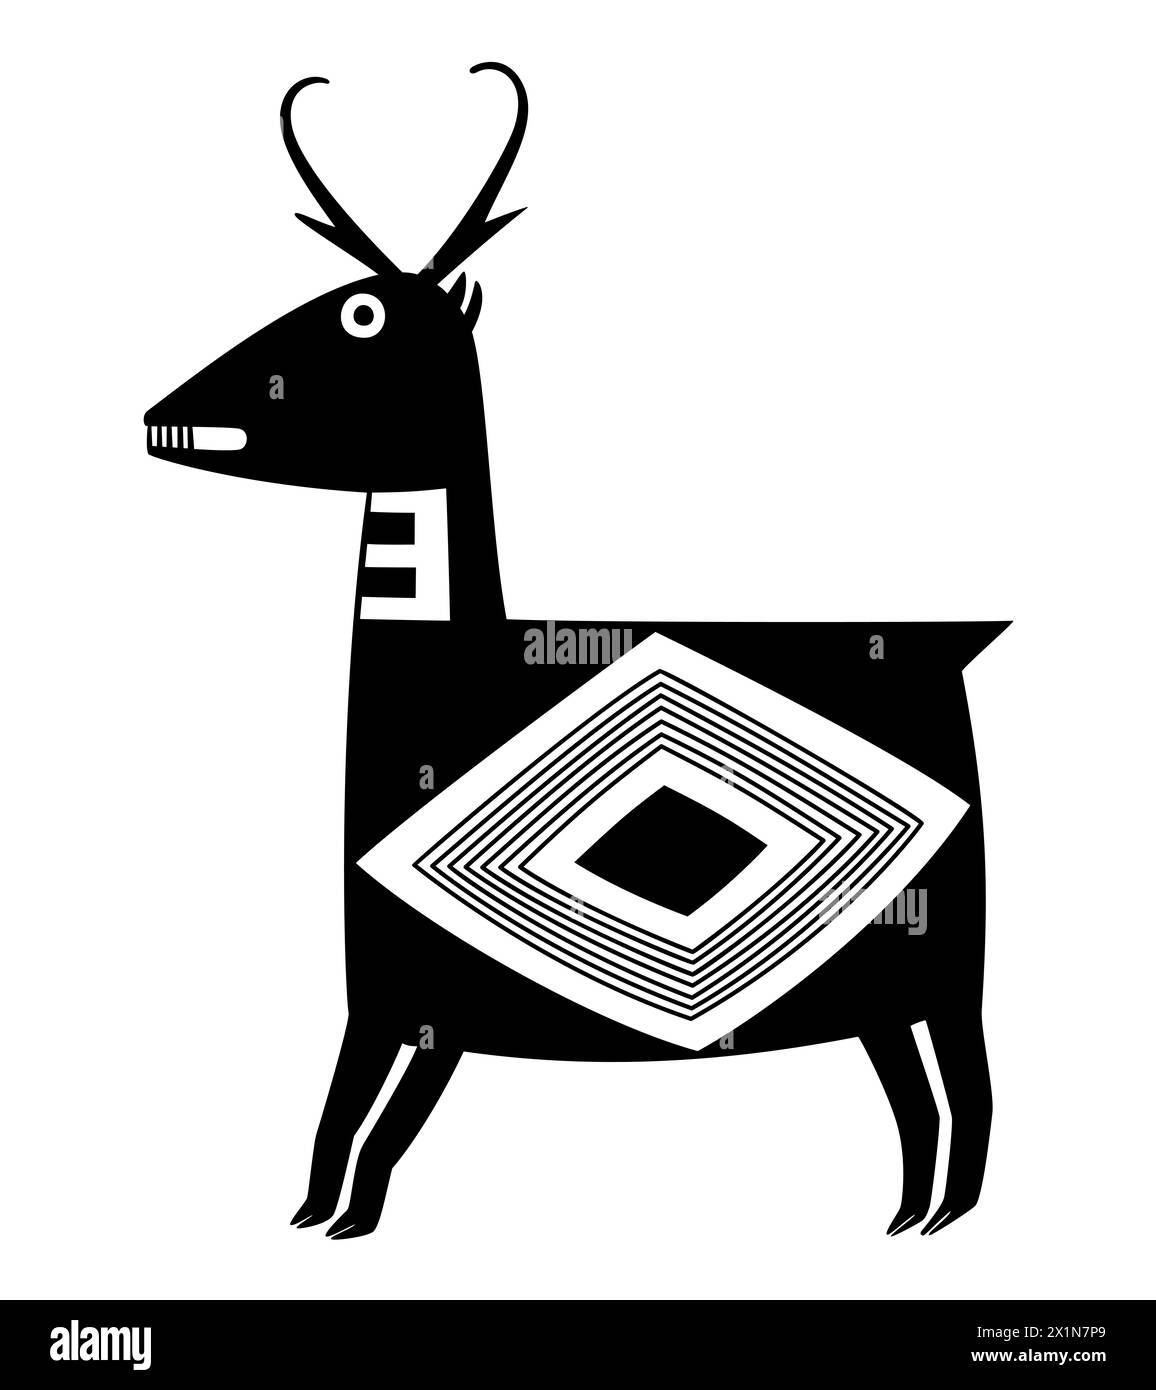 Antilope pronghorn, motif de poterie Mangas-Mimbres de la culture amérindienne Mogollon, CA. 1000 ce, Nouveau-Mexique. Pronghorn géométrique. Banque D'Images